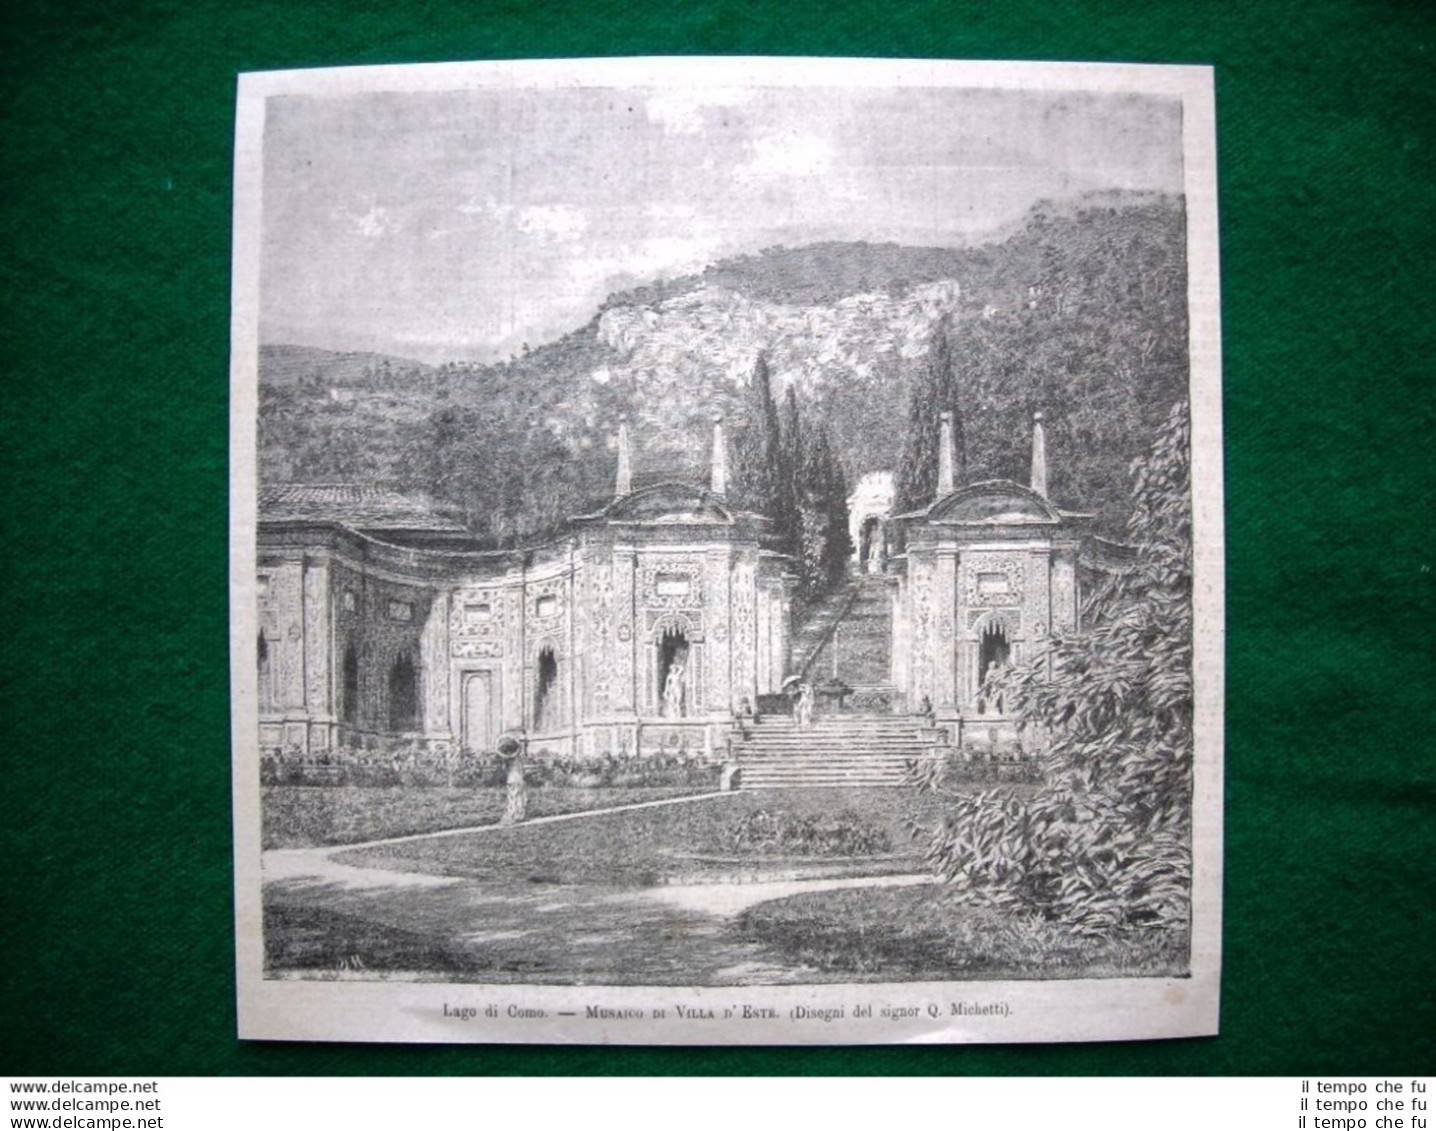 Lago Di Como Nel 1882 - Mosaico Di Villa D'Este (disegni Del Signor Q. Michetti) - Ante 1900